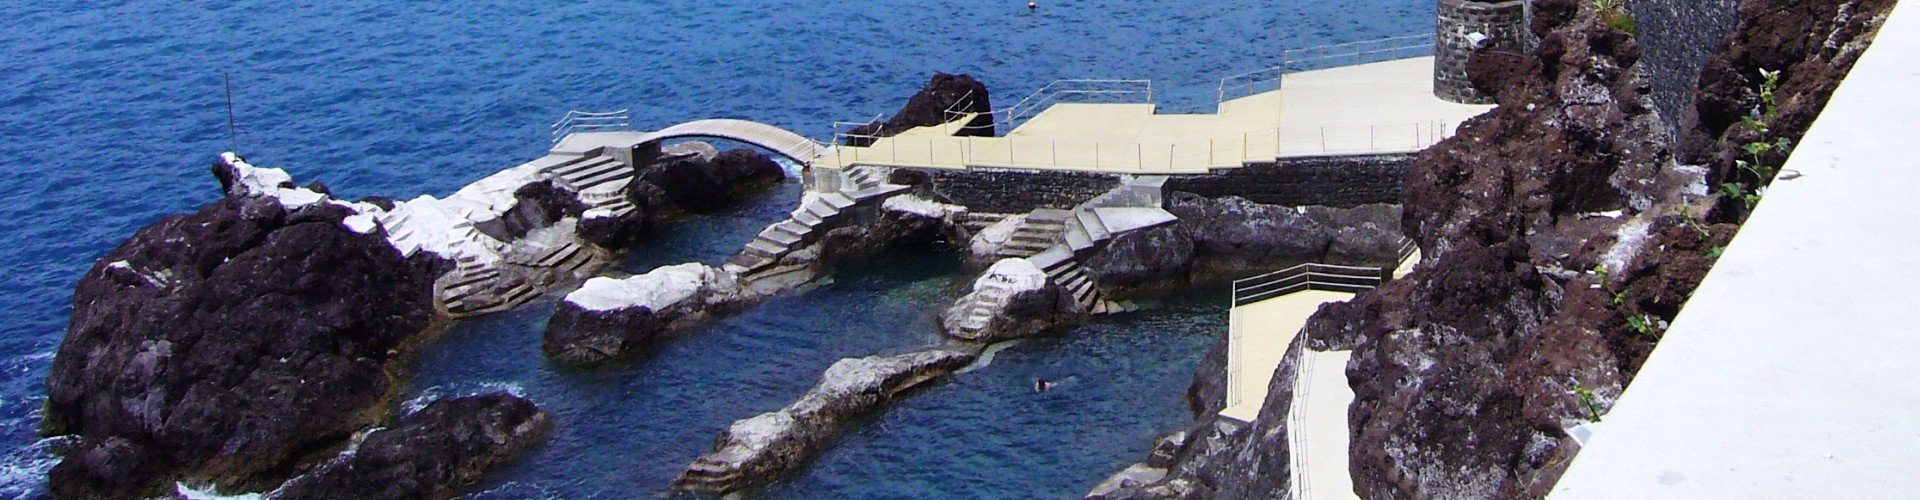 Doca do Cavacas Bathing Complex, Funchal, Madeira